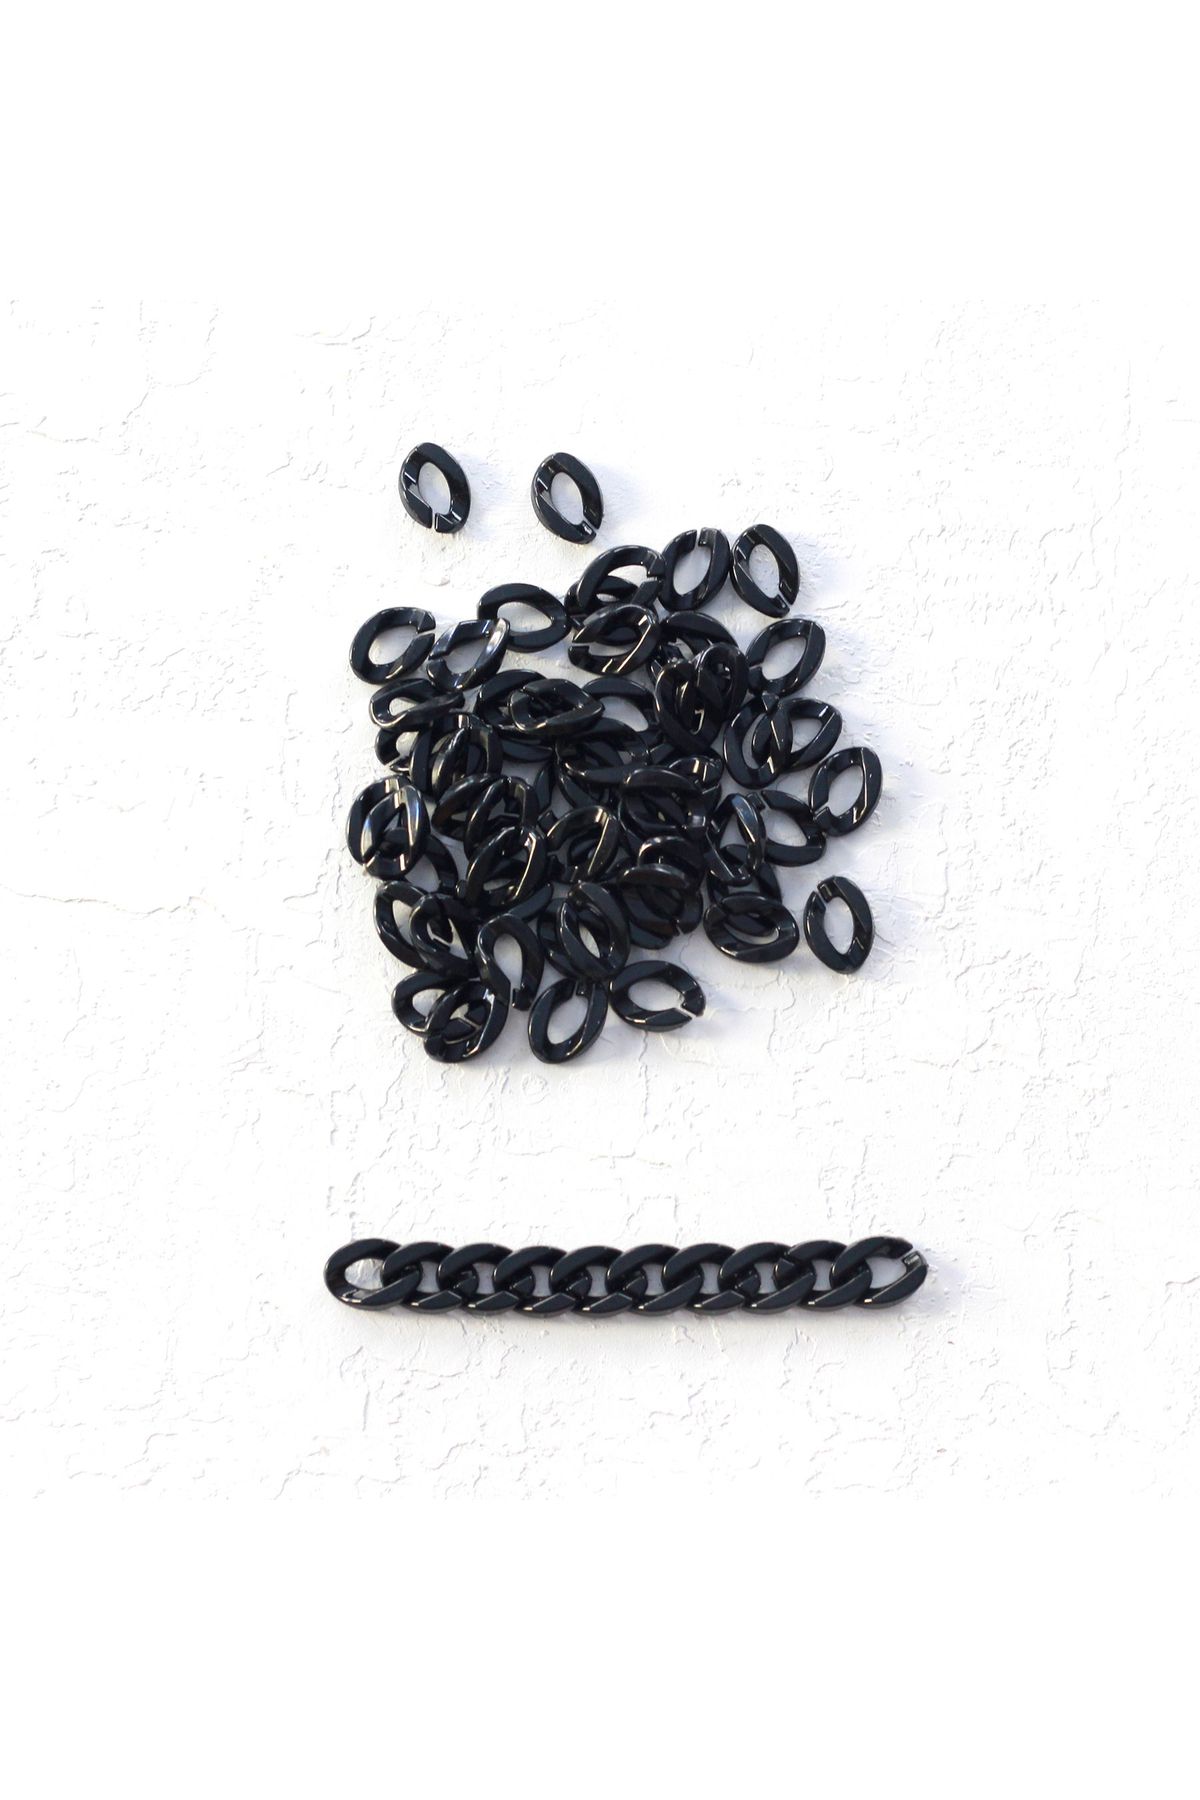 Bimotif Siyah Akrilik Zincir Halkası, 1.5x2.5 Cm 100 Gram